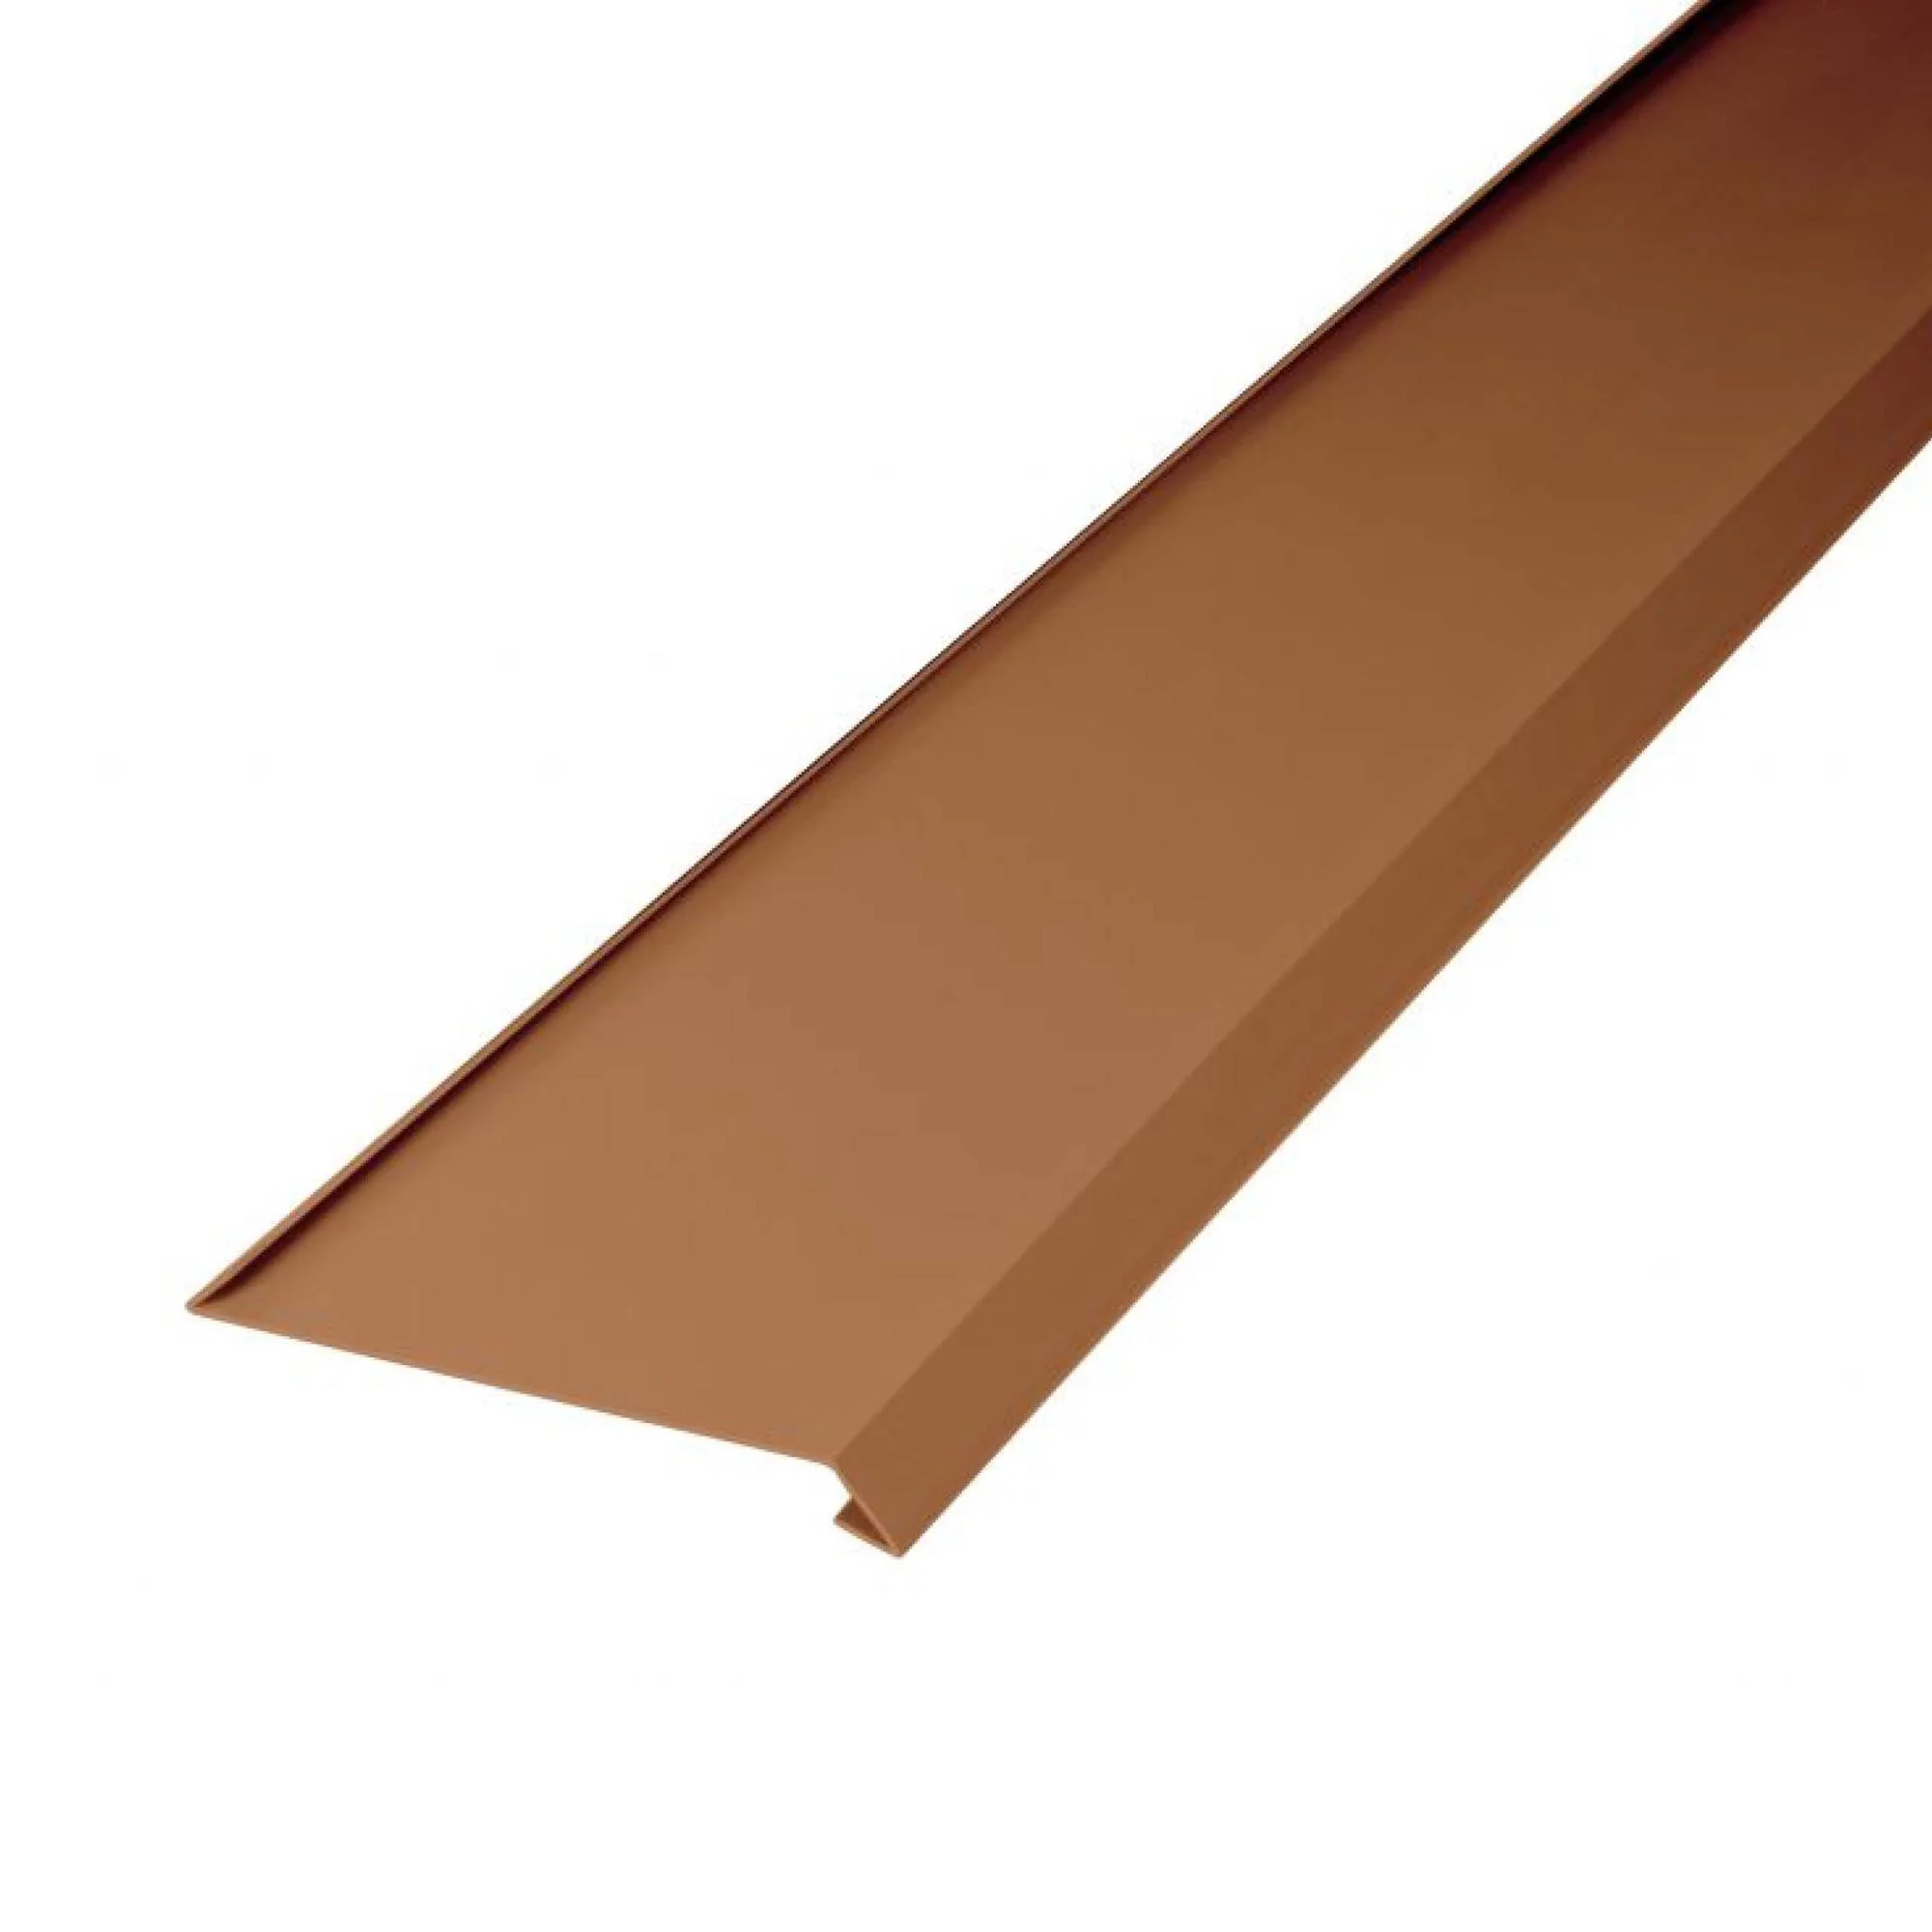 bande-de-toit-pour-gouttière,-pliée-des-deux-côtés-marron-2m